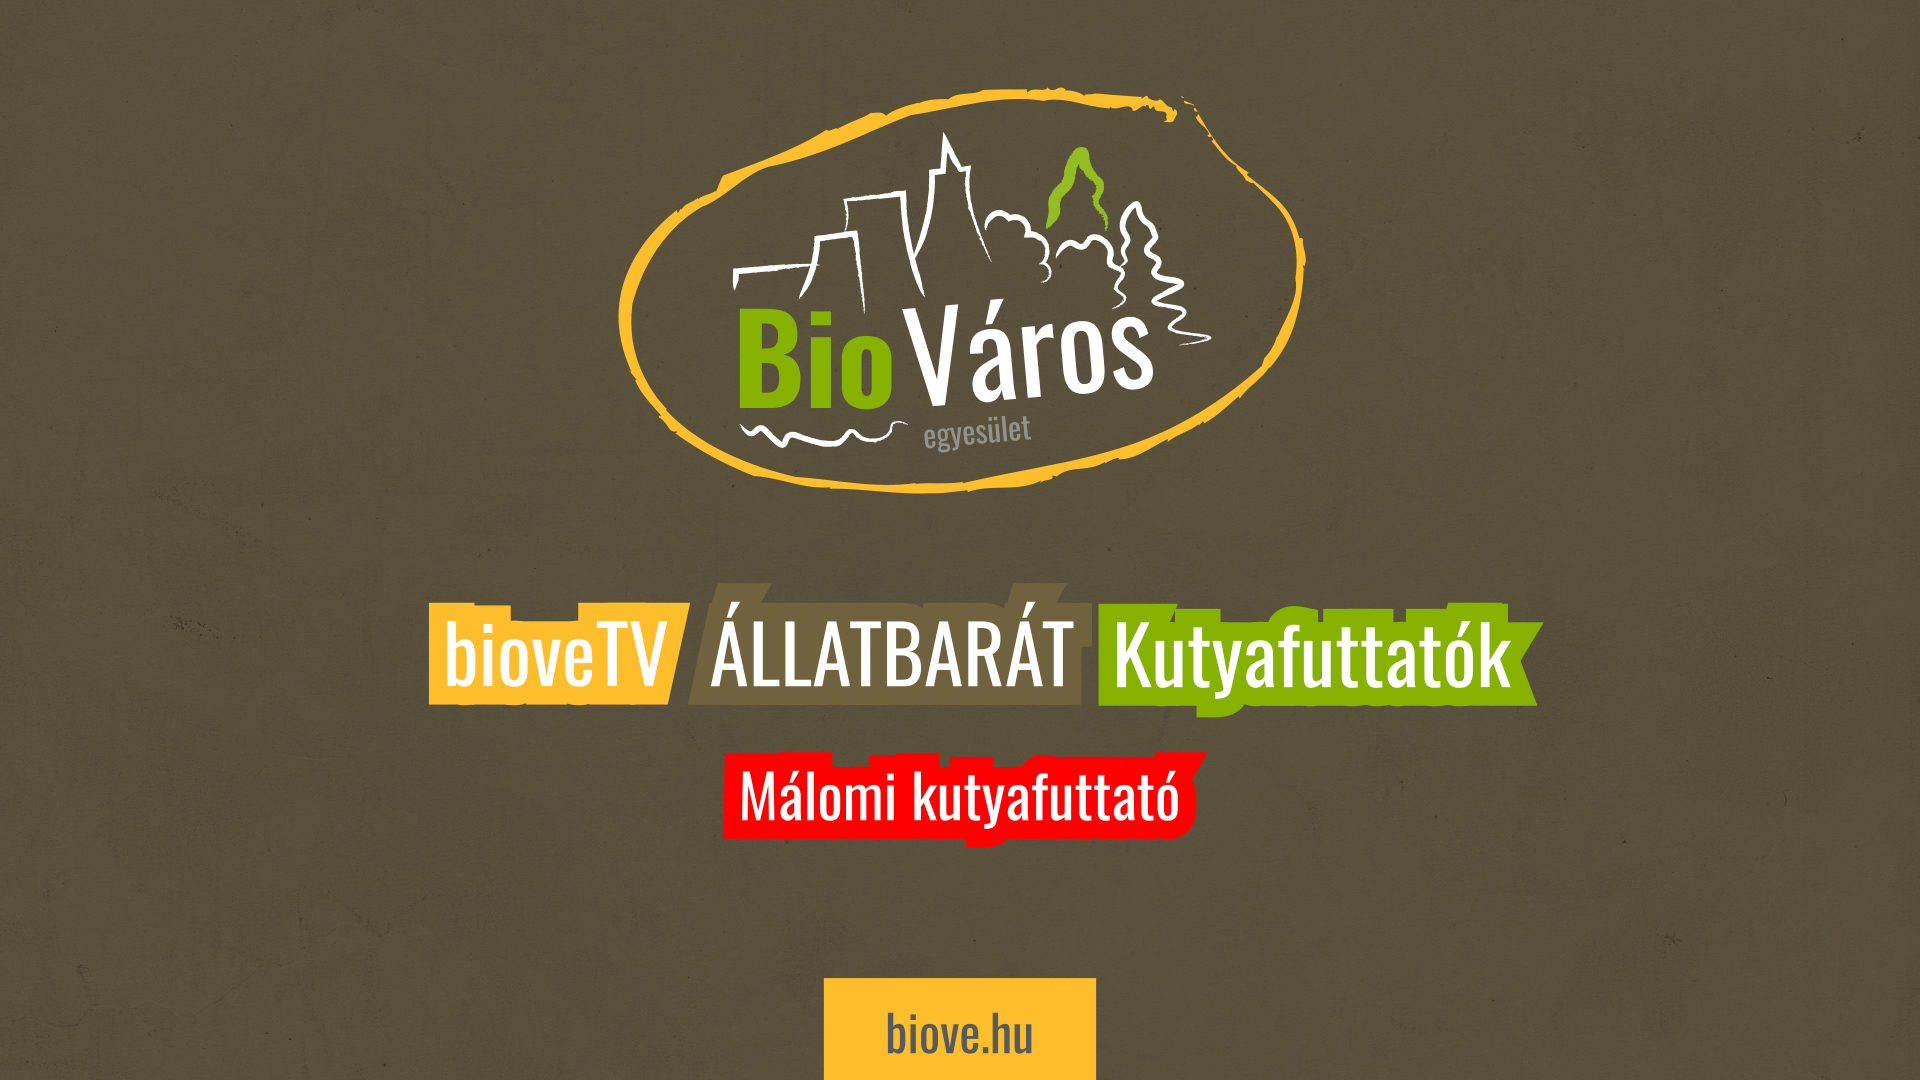 BioveTV - Málomi kutyafuttató